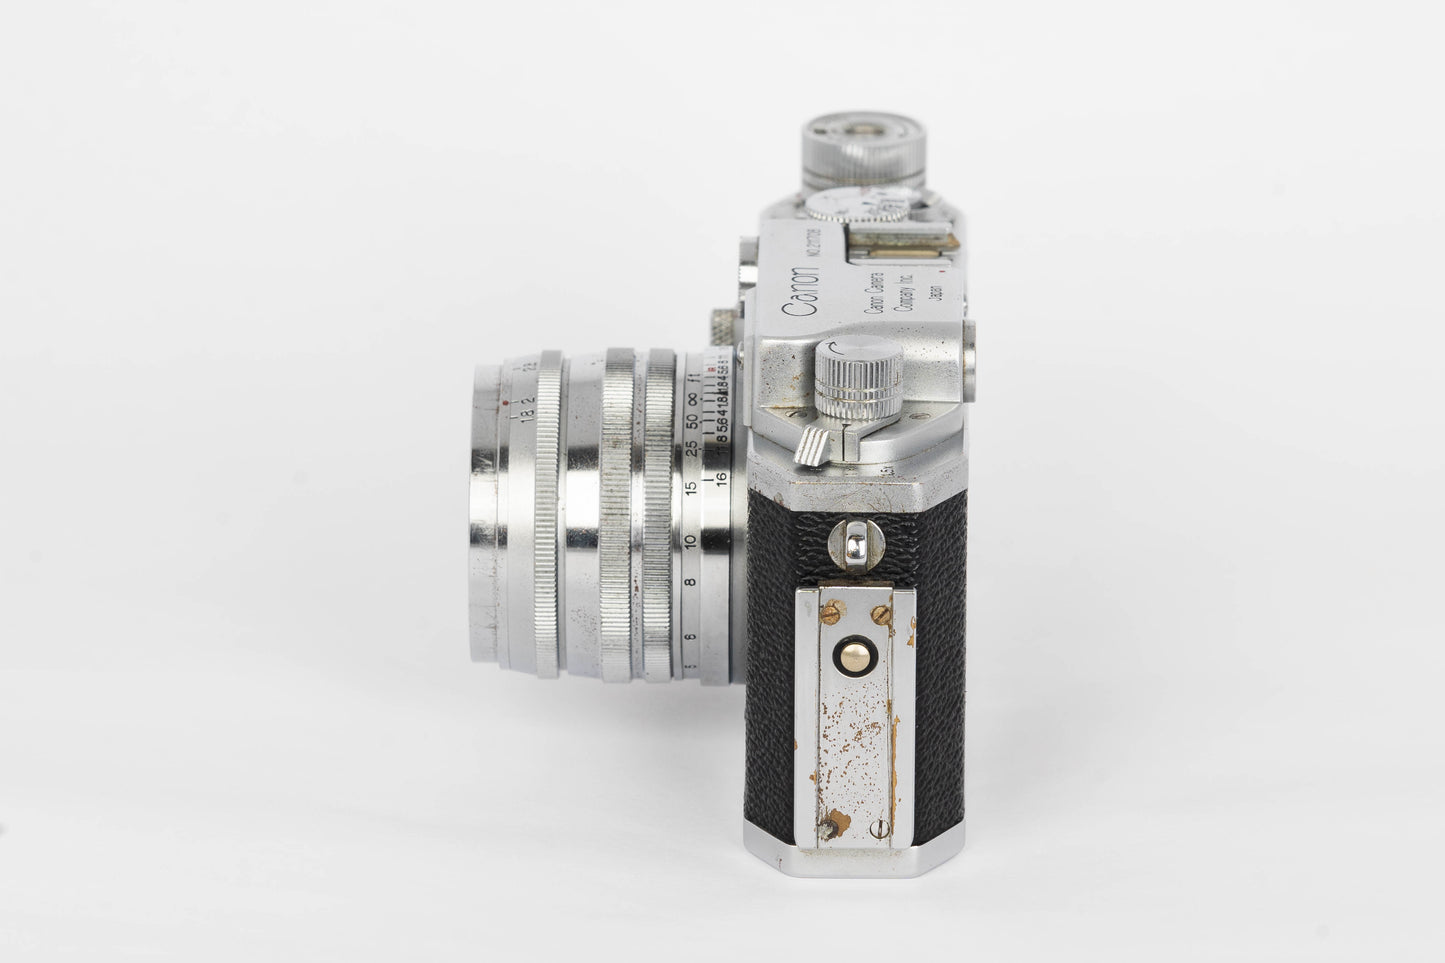 Canon IVsb-2(4sb-2) Rangefinder 35mm Film Camera w/ Canon 50mm F/1.8 L39 manual focus lens